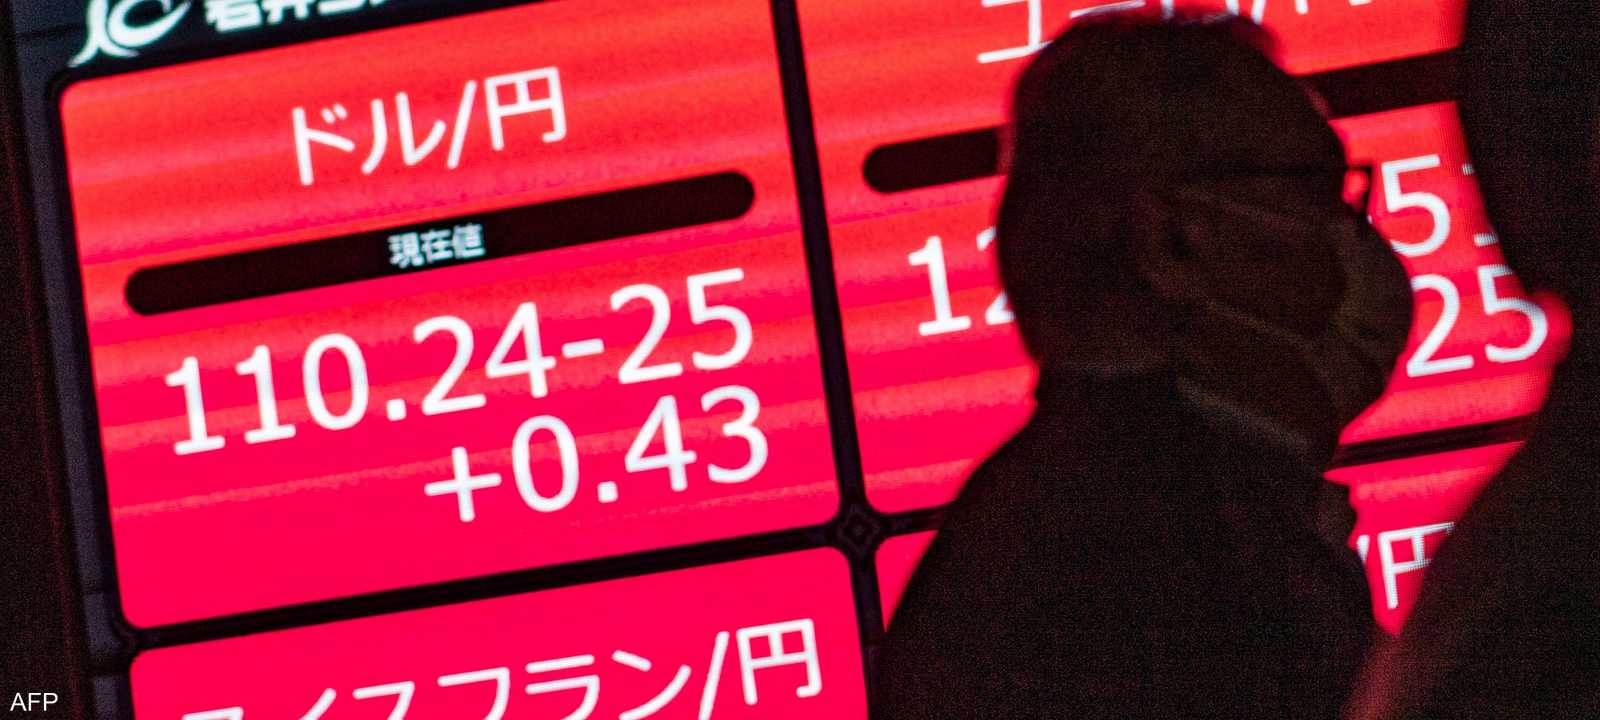 الأسهم اليابانية تتراجع للجلسة الثالثة